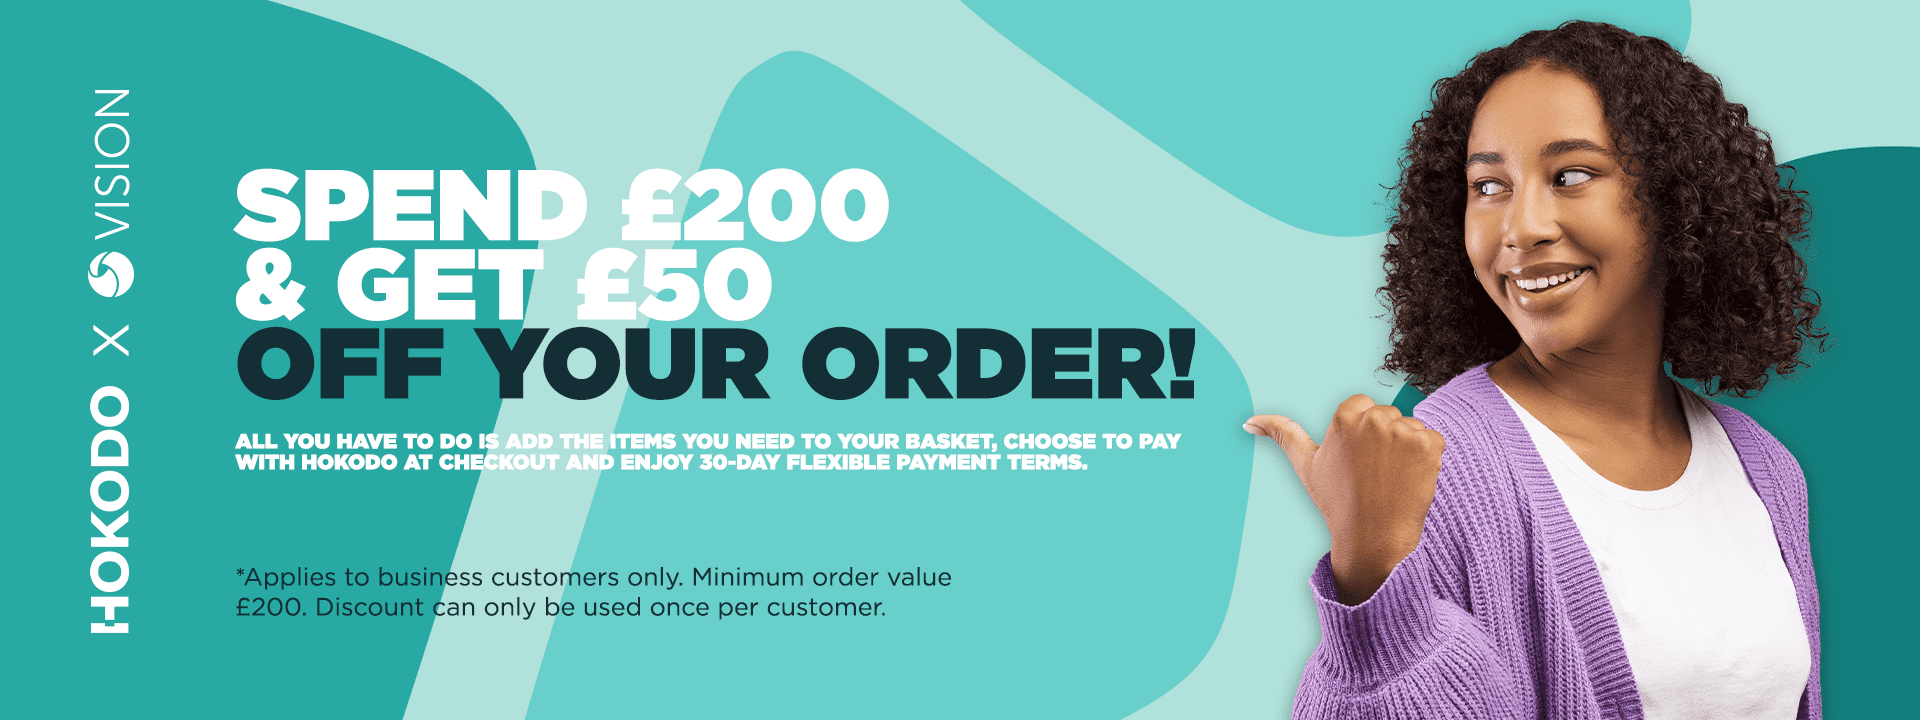 Hokodo - Spend £200 & get £50 off your order